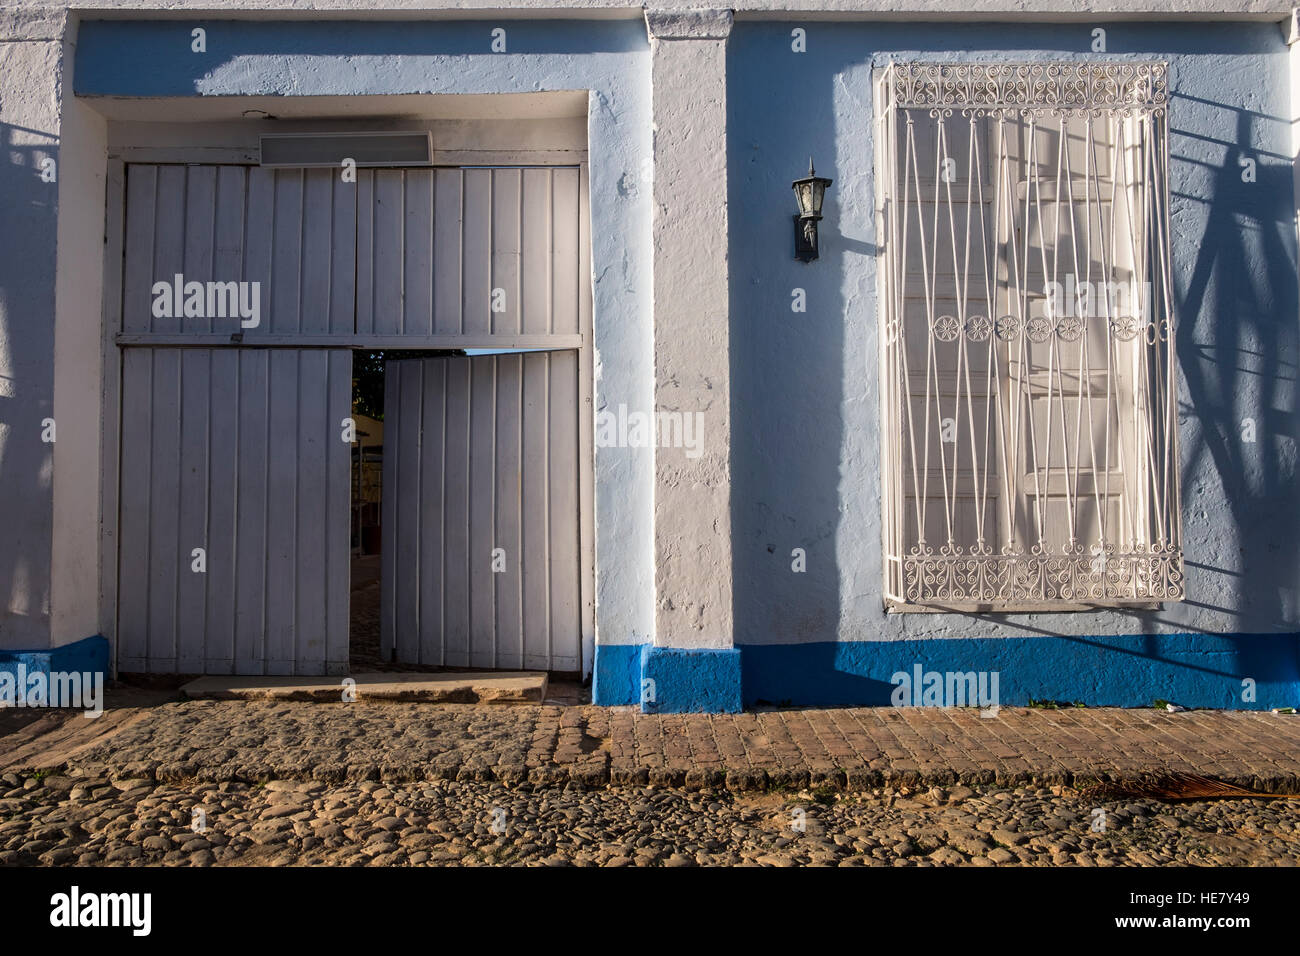 Fassade mit typischen Eisenbarren auf die Fenster und die offene Seitentür, Trinidad, Kuba Stockfoto